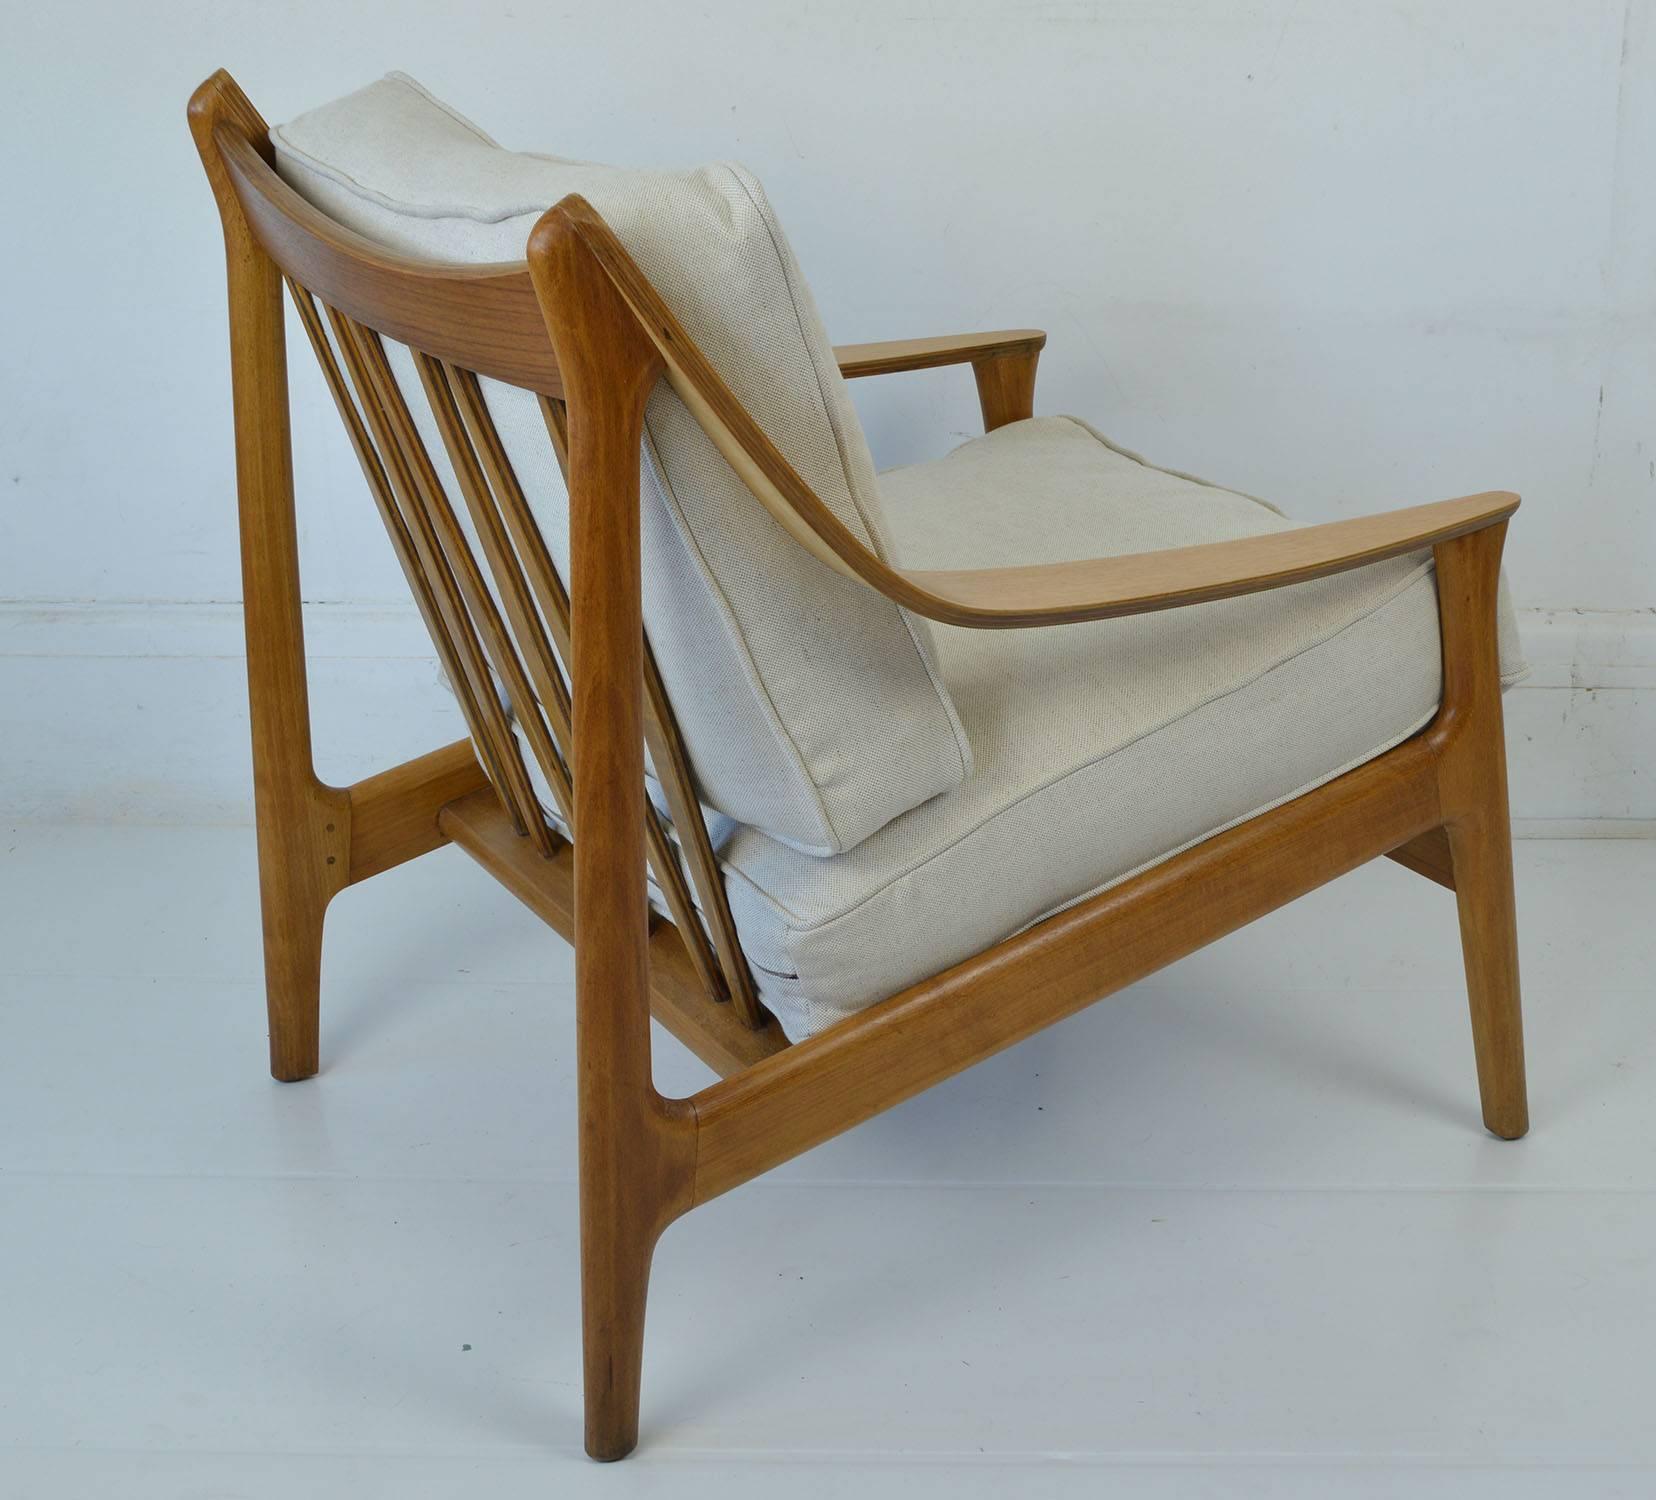 Scandinavian Modern Midcentury Scandinavian Style Bent Ply and Beech Chair